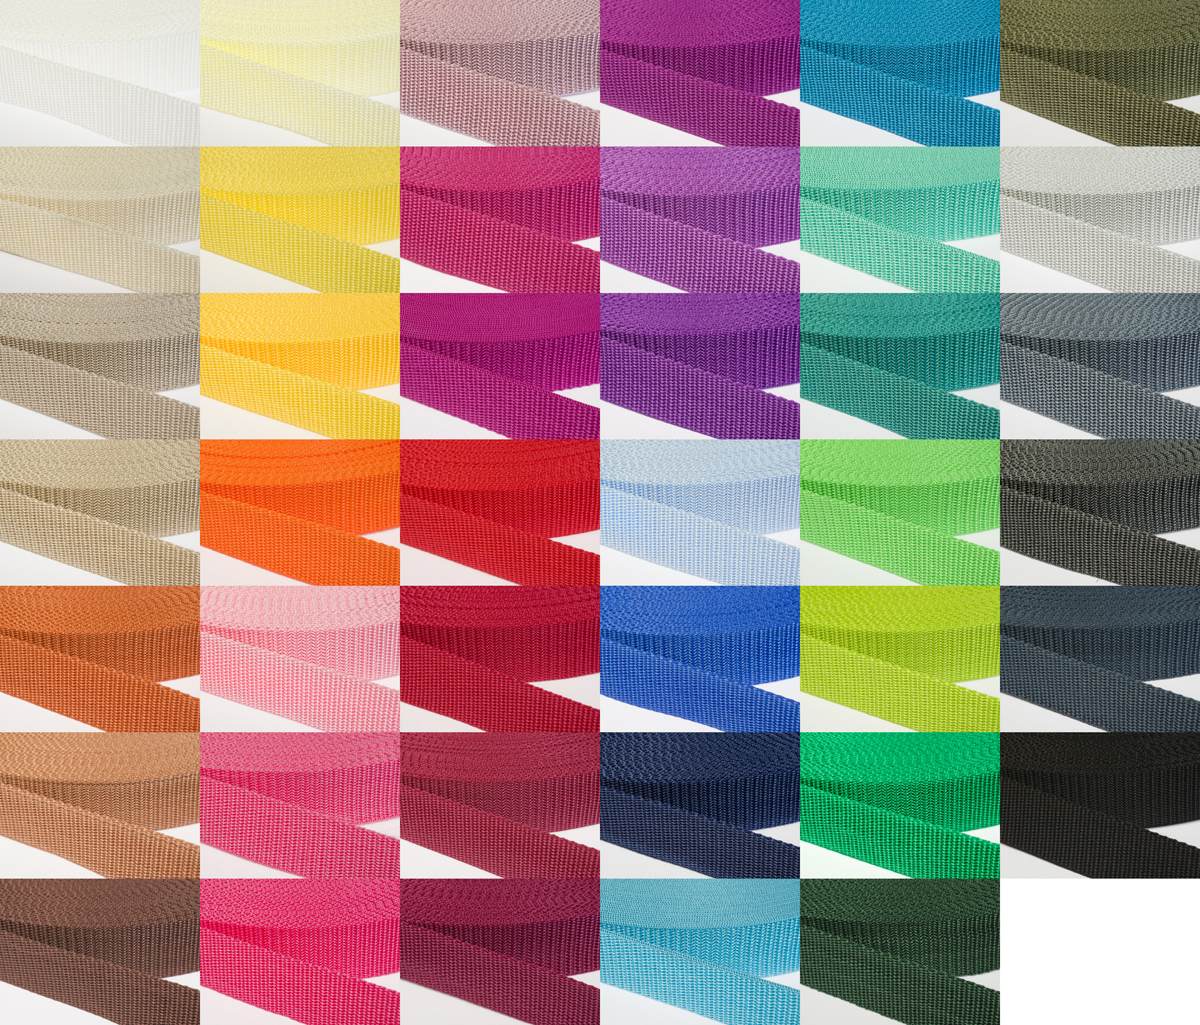 Gurtband 30mm breit aus Polypropylen in 41 Farben 05 - ockerbraun 12 Meter